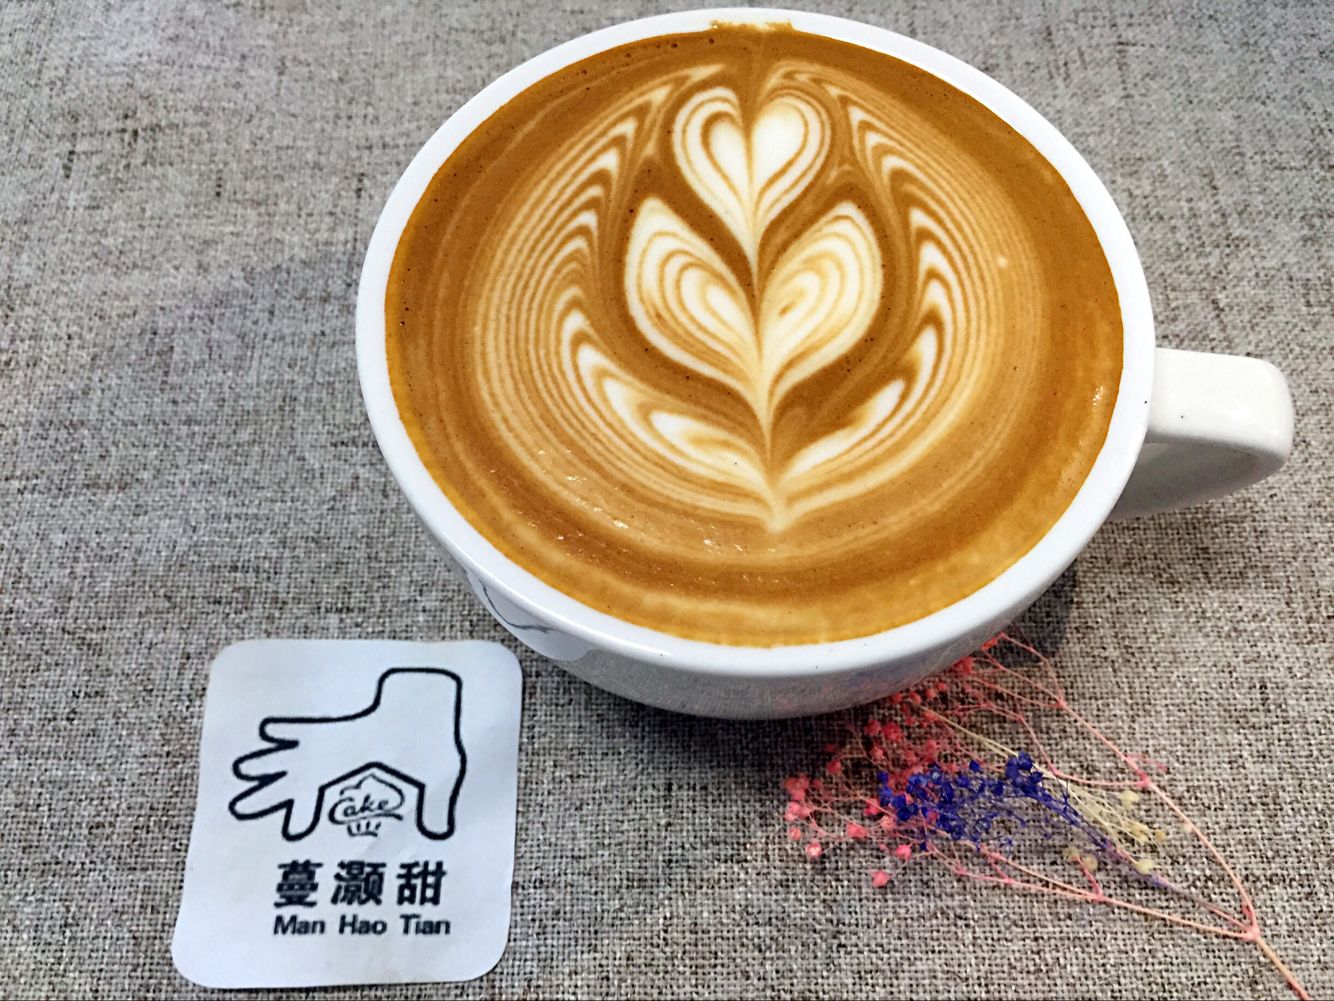 常州市咖啡培训 韩式裱花培训 烘焙培训厂家咖啡培训 韩式裱花培训 烘焙培训